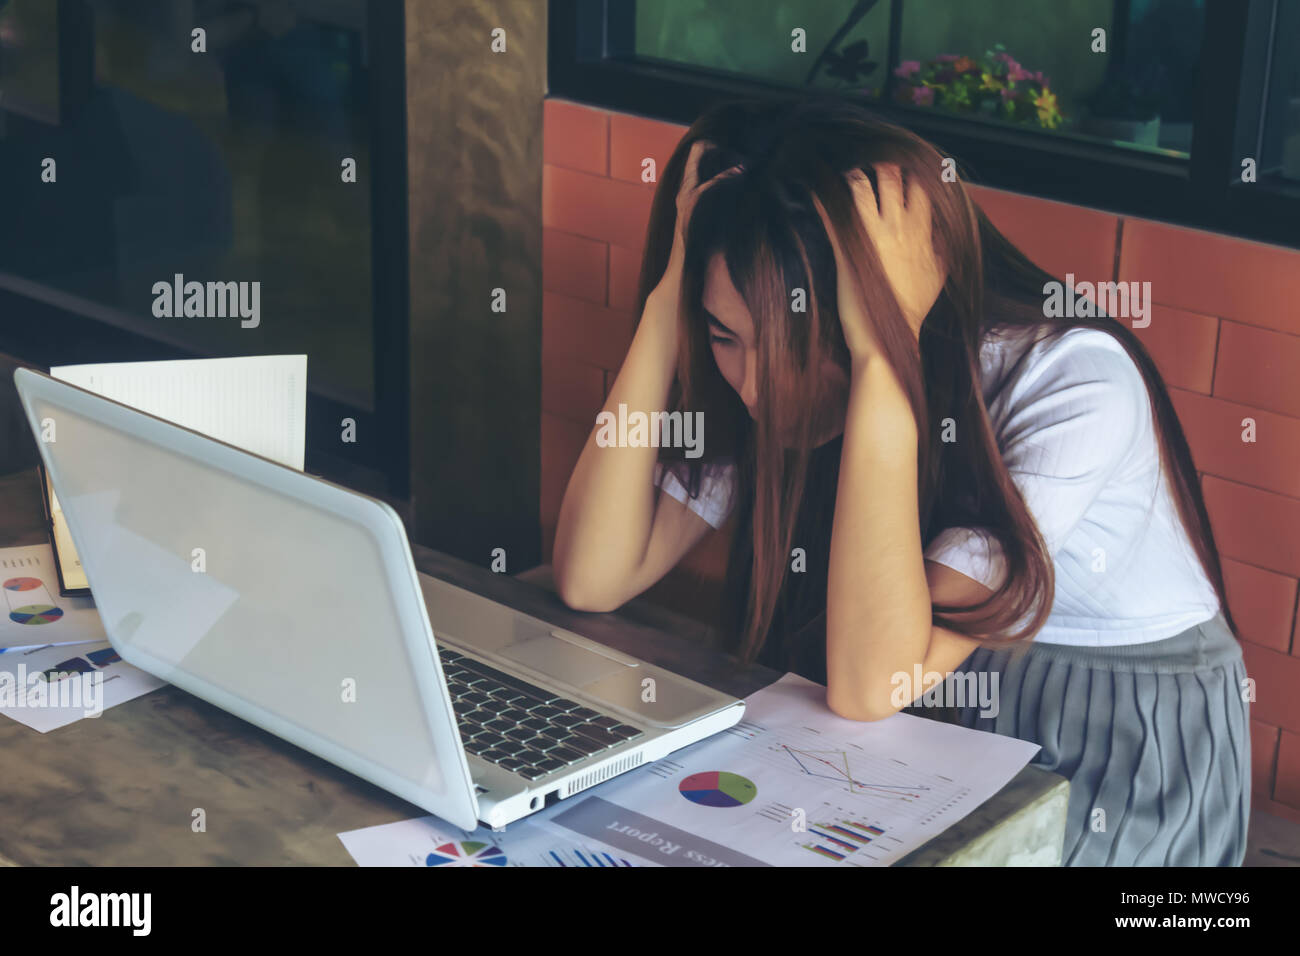 Asien Mädchen mit Laptop emotion edgy oder besetzt ist oder Angst wegen Arbeit oder Ausbildung. Stockfoto